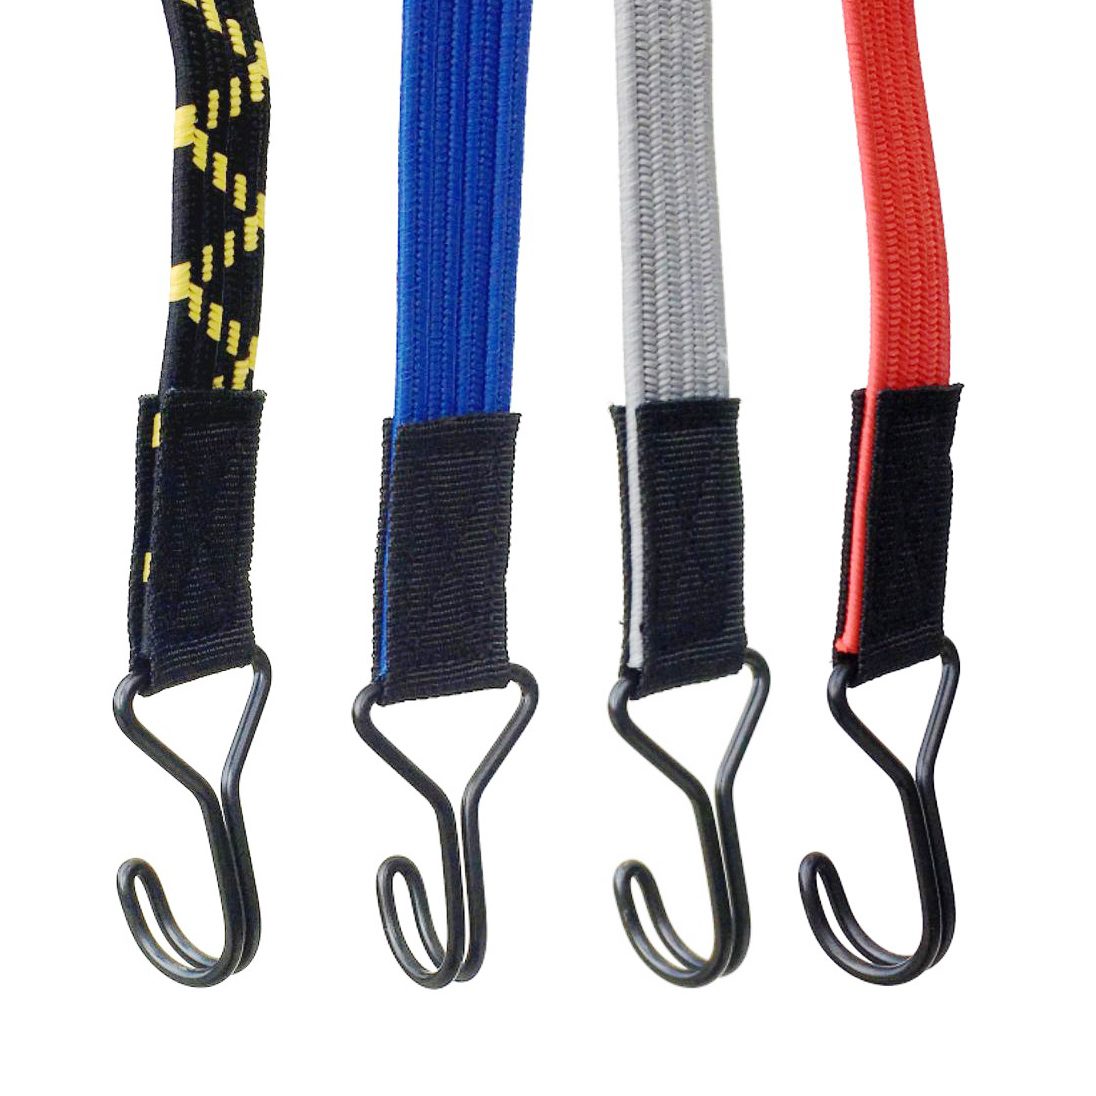 Tendeurs Elastique Plat avec Crochets 2M,Sandow Reglable Elastique avec  Crochet Métal,Corde Elastique pour Bagages